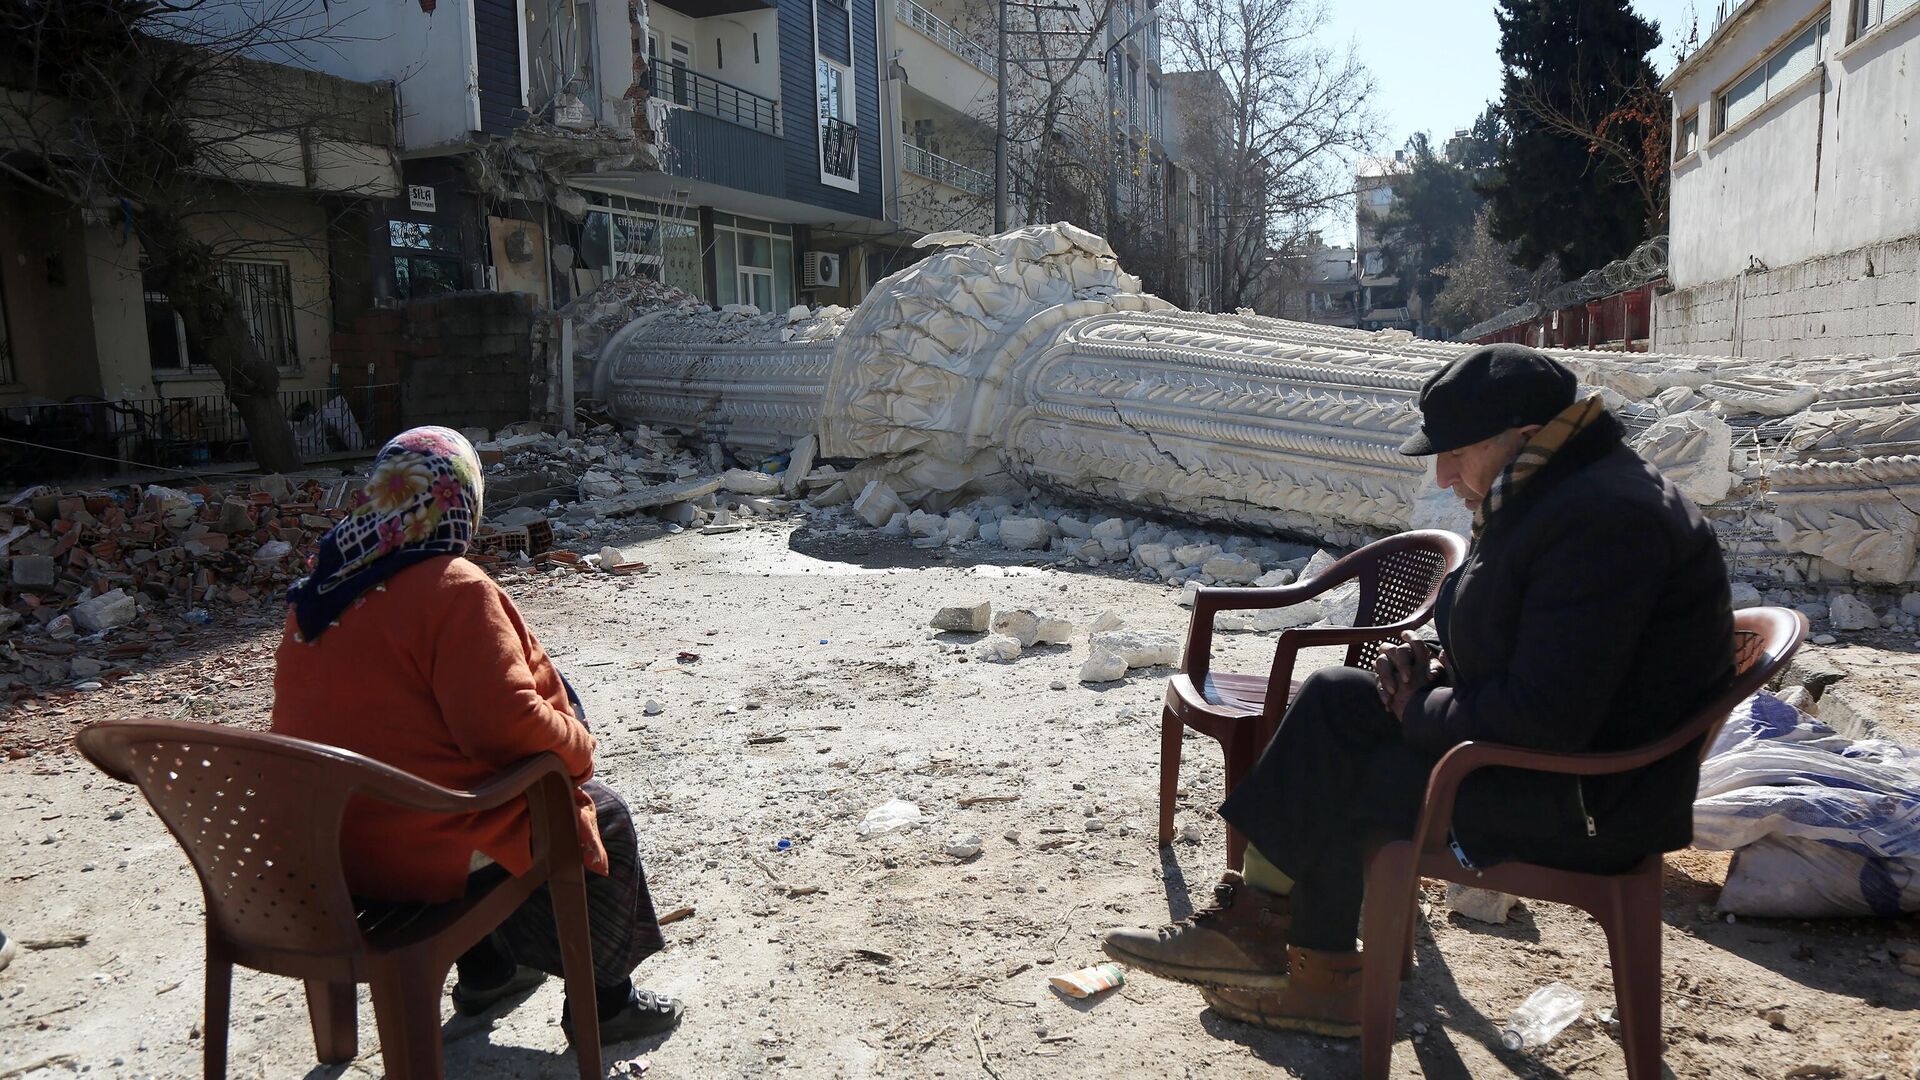 Жители на улице пострадавшего от землетрясения турецкого города Адыямана - РИА Новости, 1920, 28.02.2023